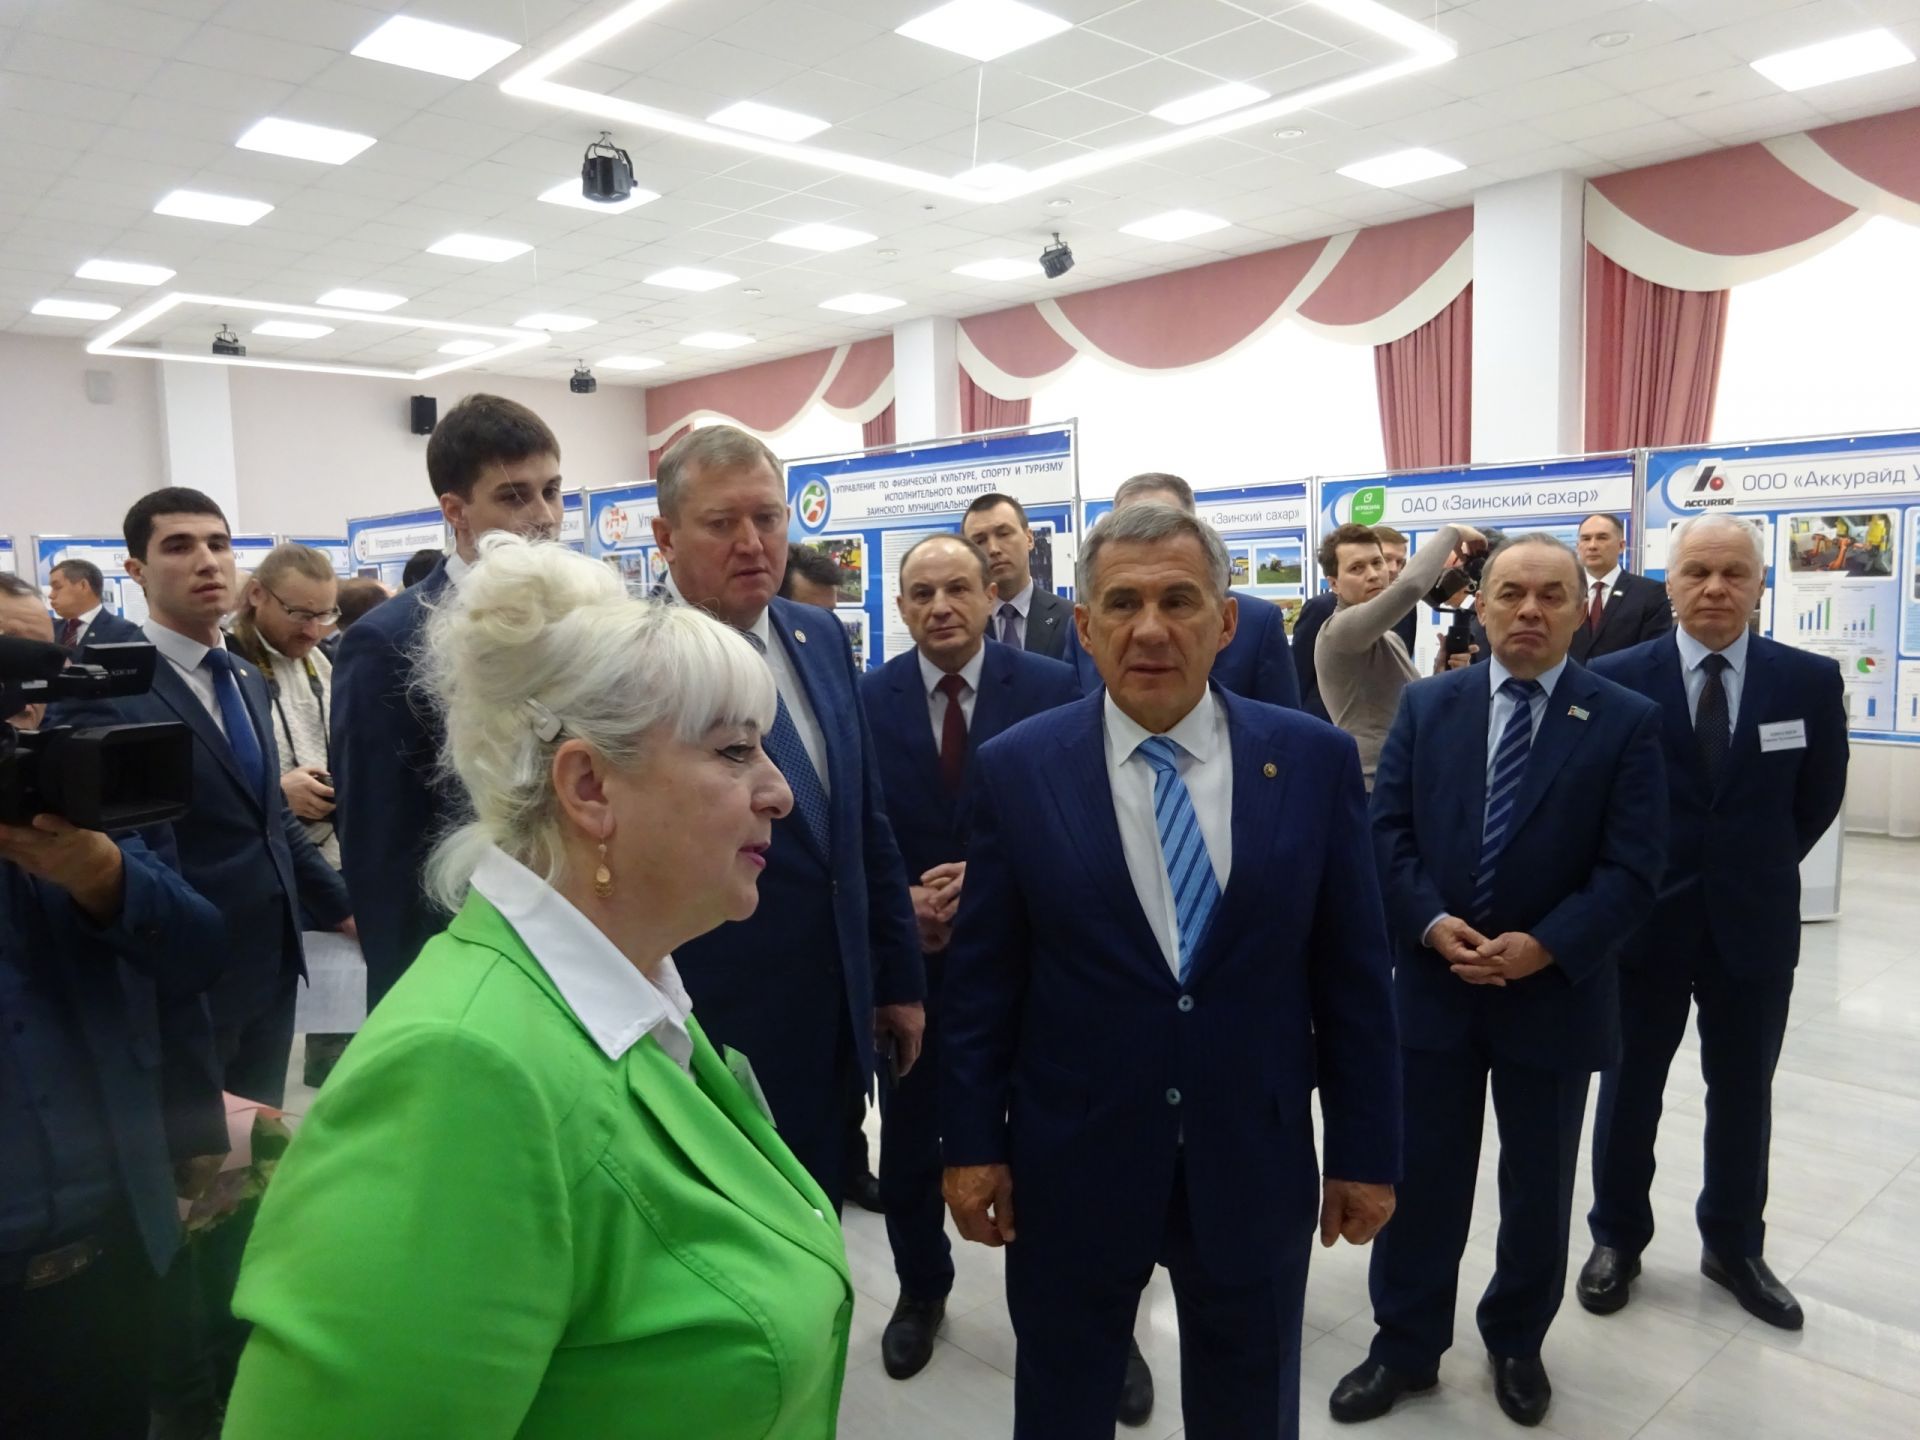 О деятельности заинских предприятий Президенту Татарстана рассказали на выставке